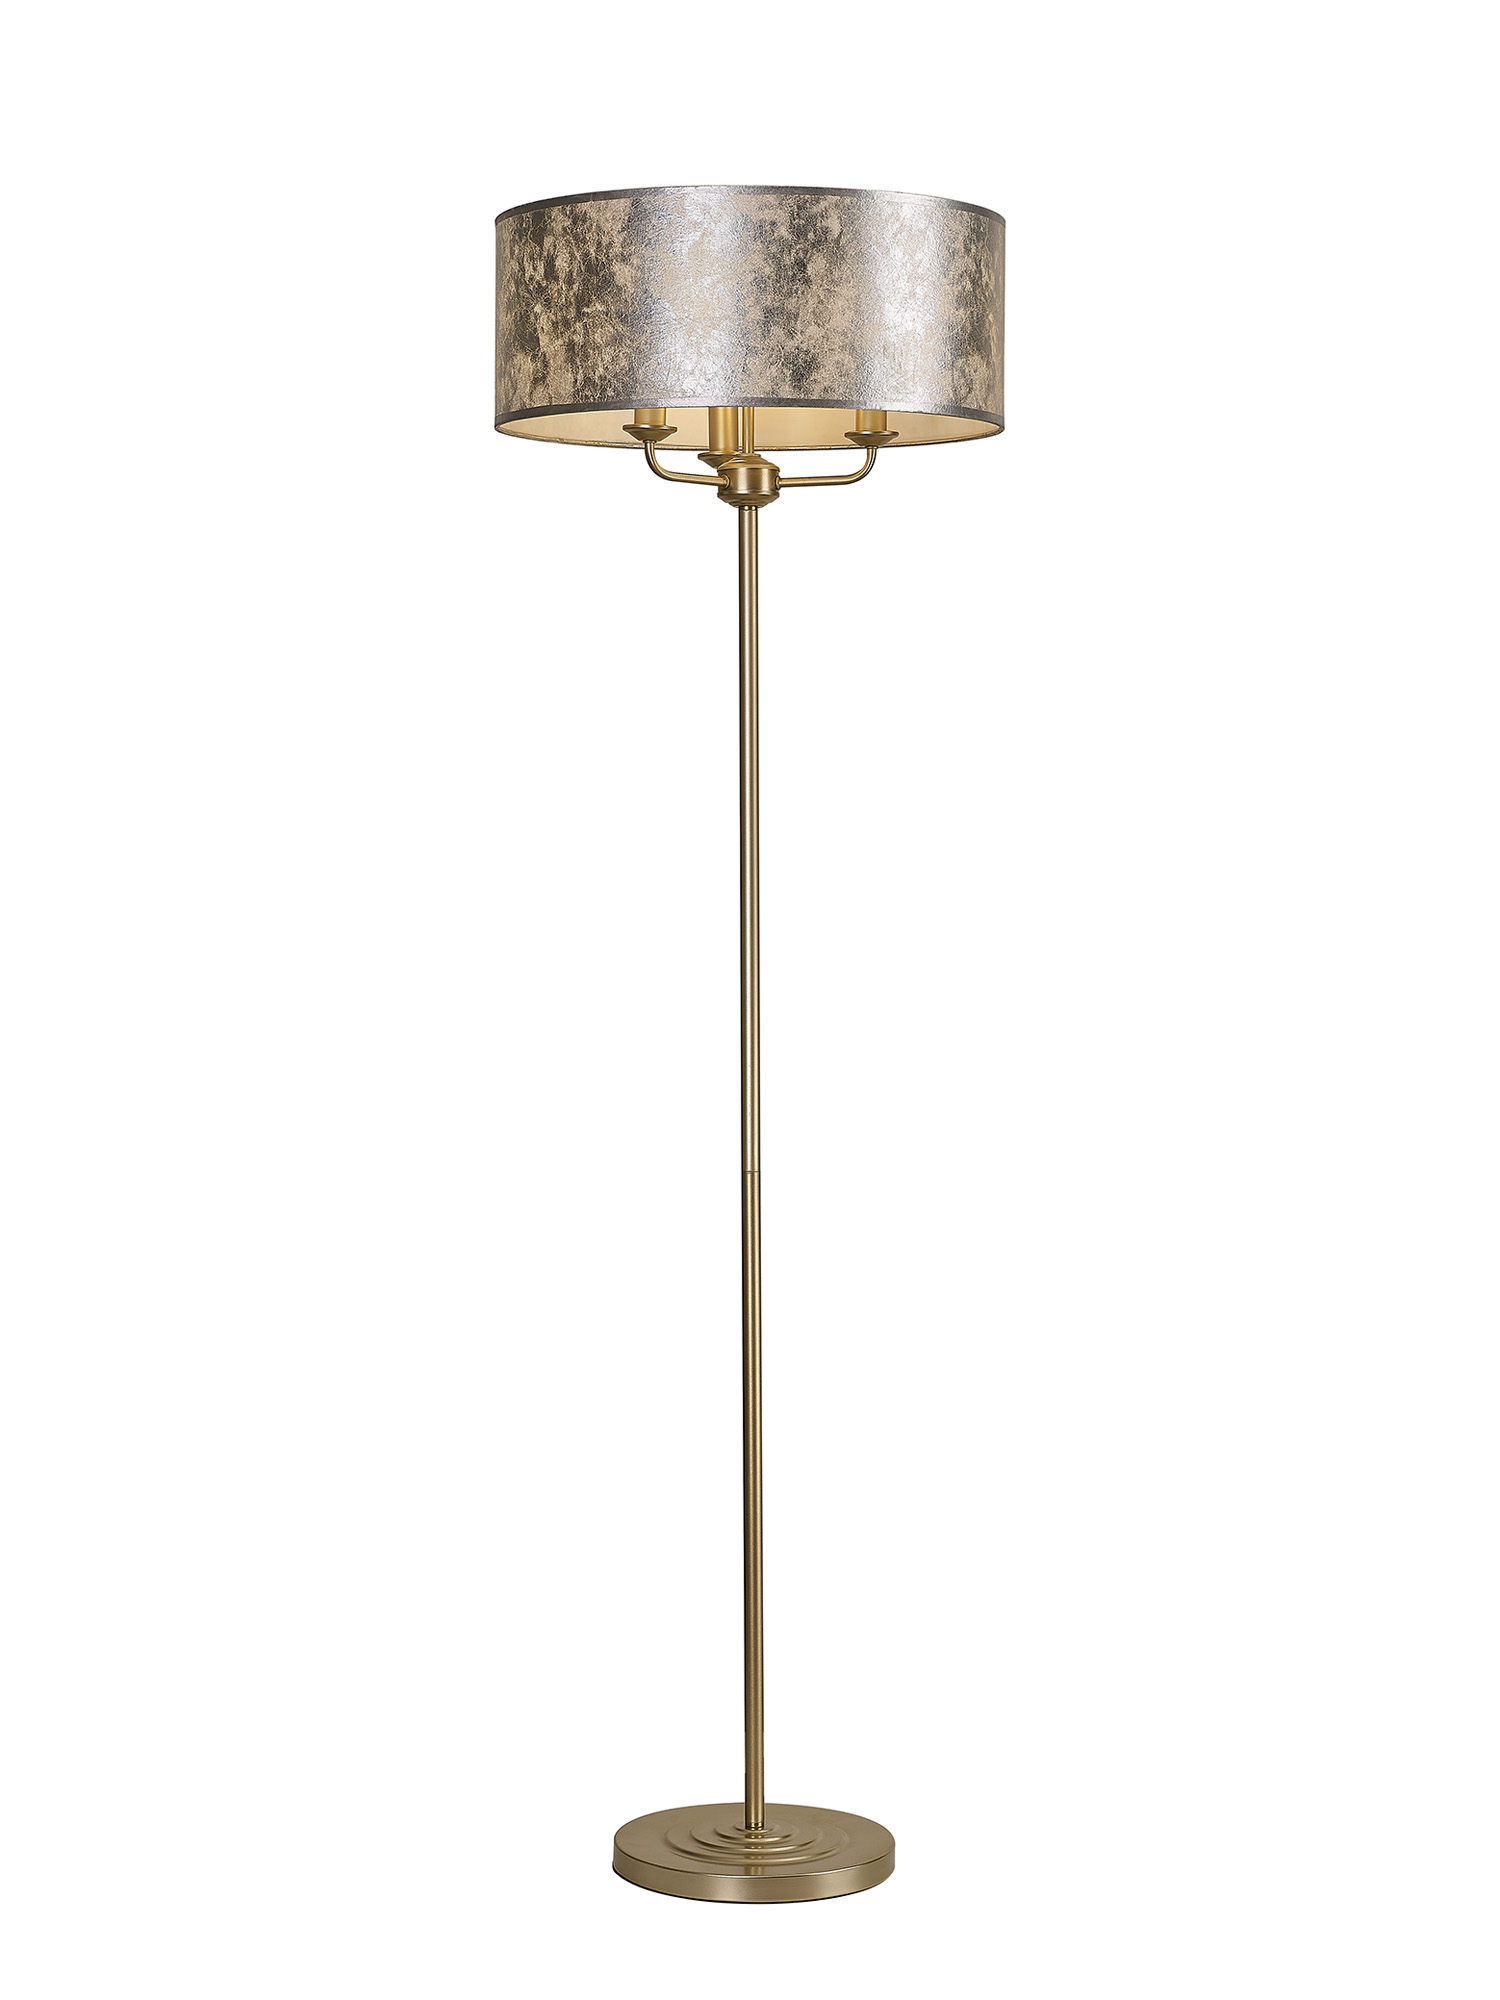 DK1006  Banyan 45cm 3 Light Floor Lamp Champagne Gold; Silver Leaf